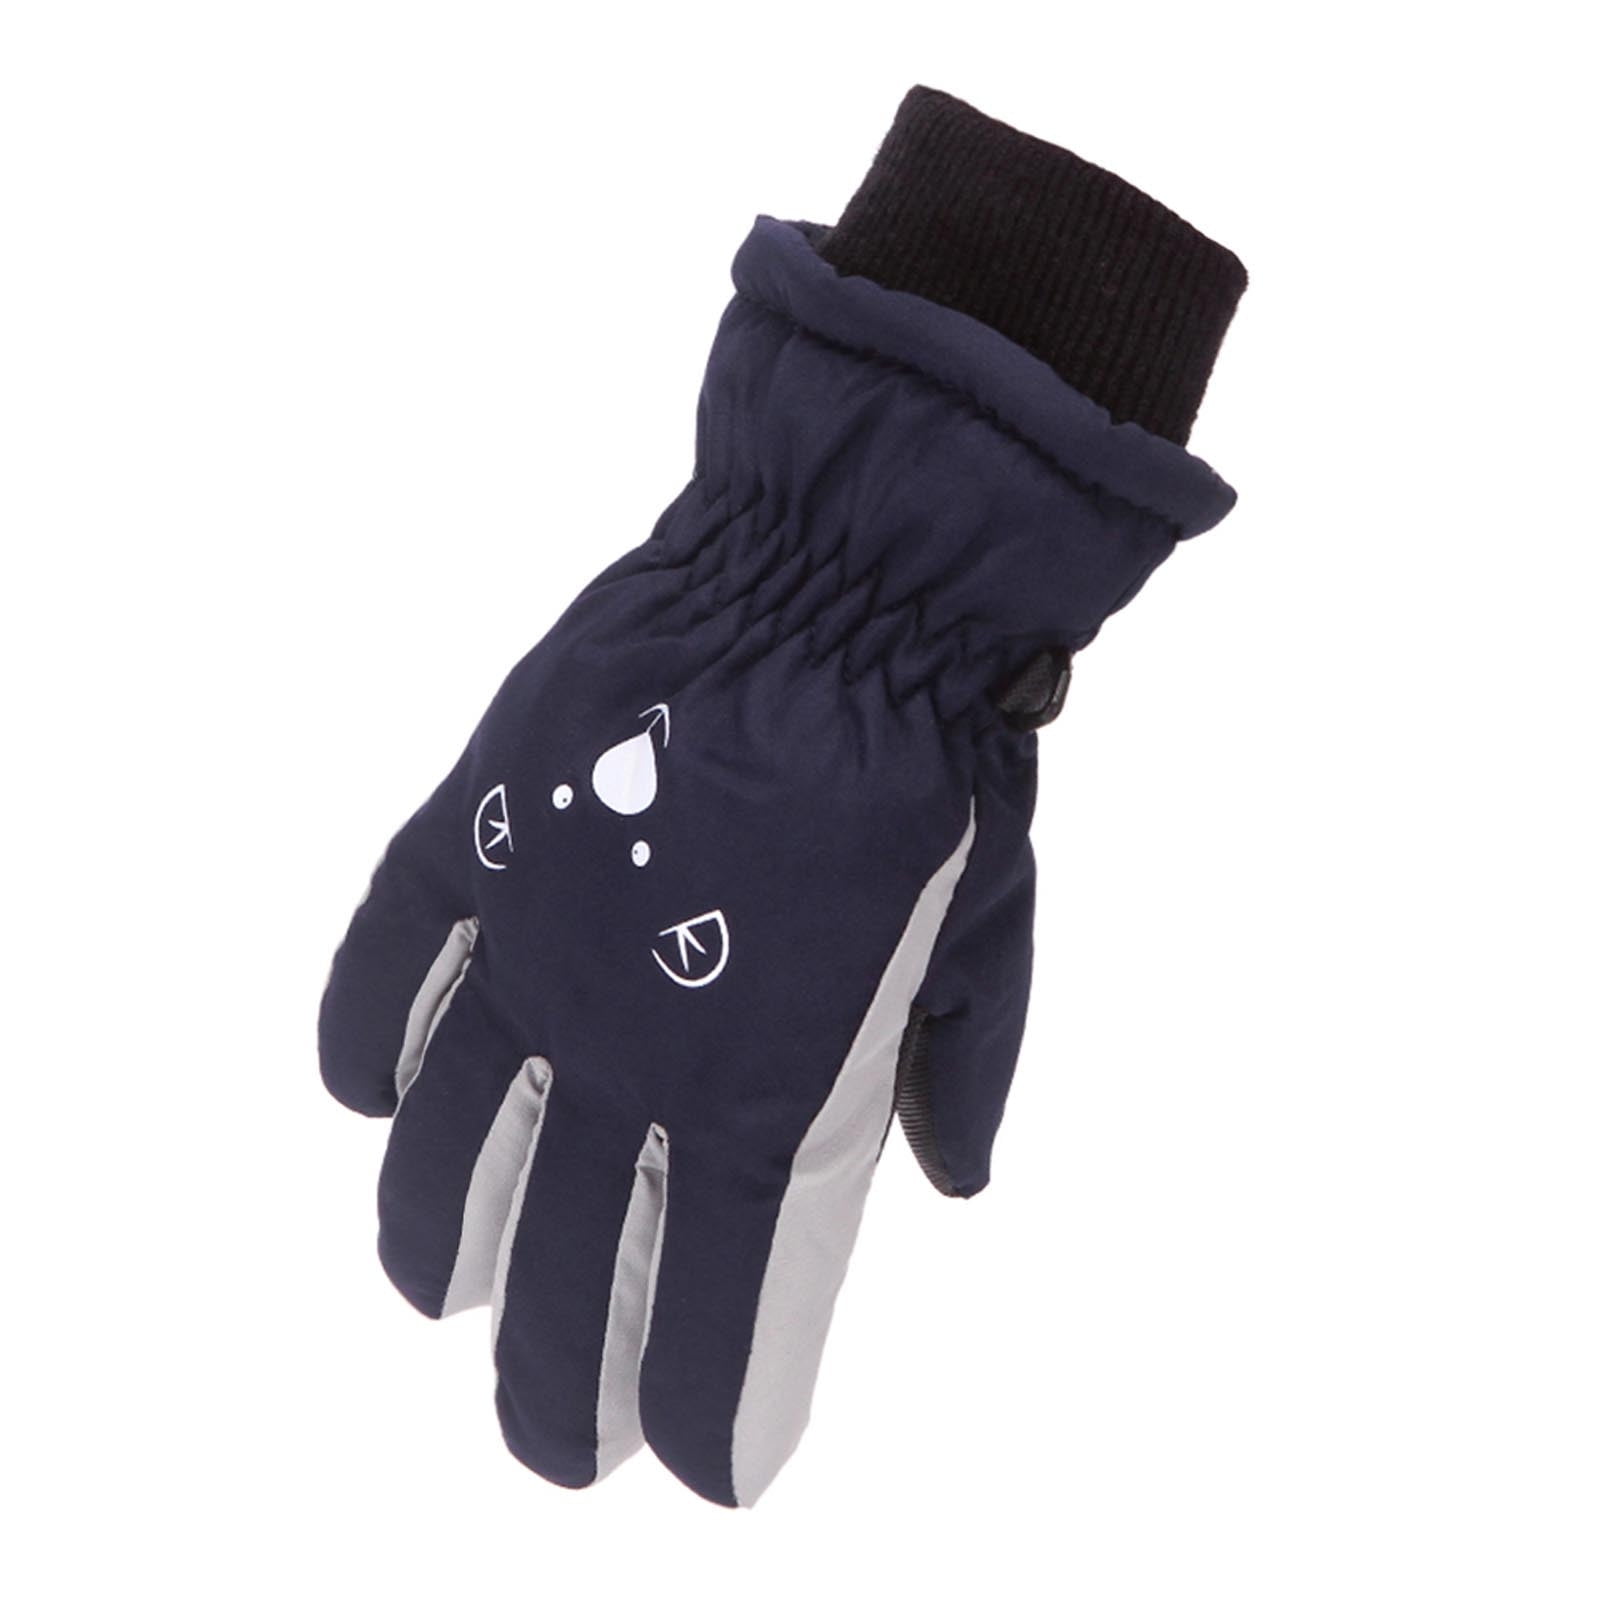 ZHANGAIGUO Half Finger Winter Children Knitted Gloves Color : Blue Dispensing Non-slip Mittens Warm Half Finger Mittens Gloves for Child Toddler Kids